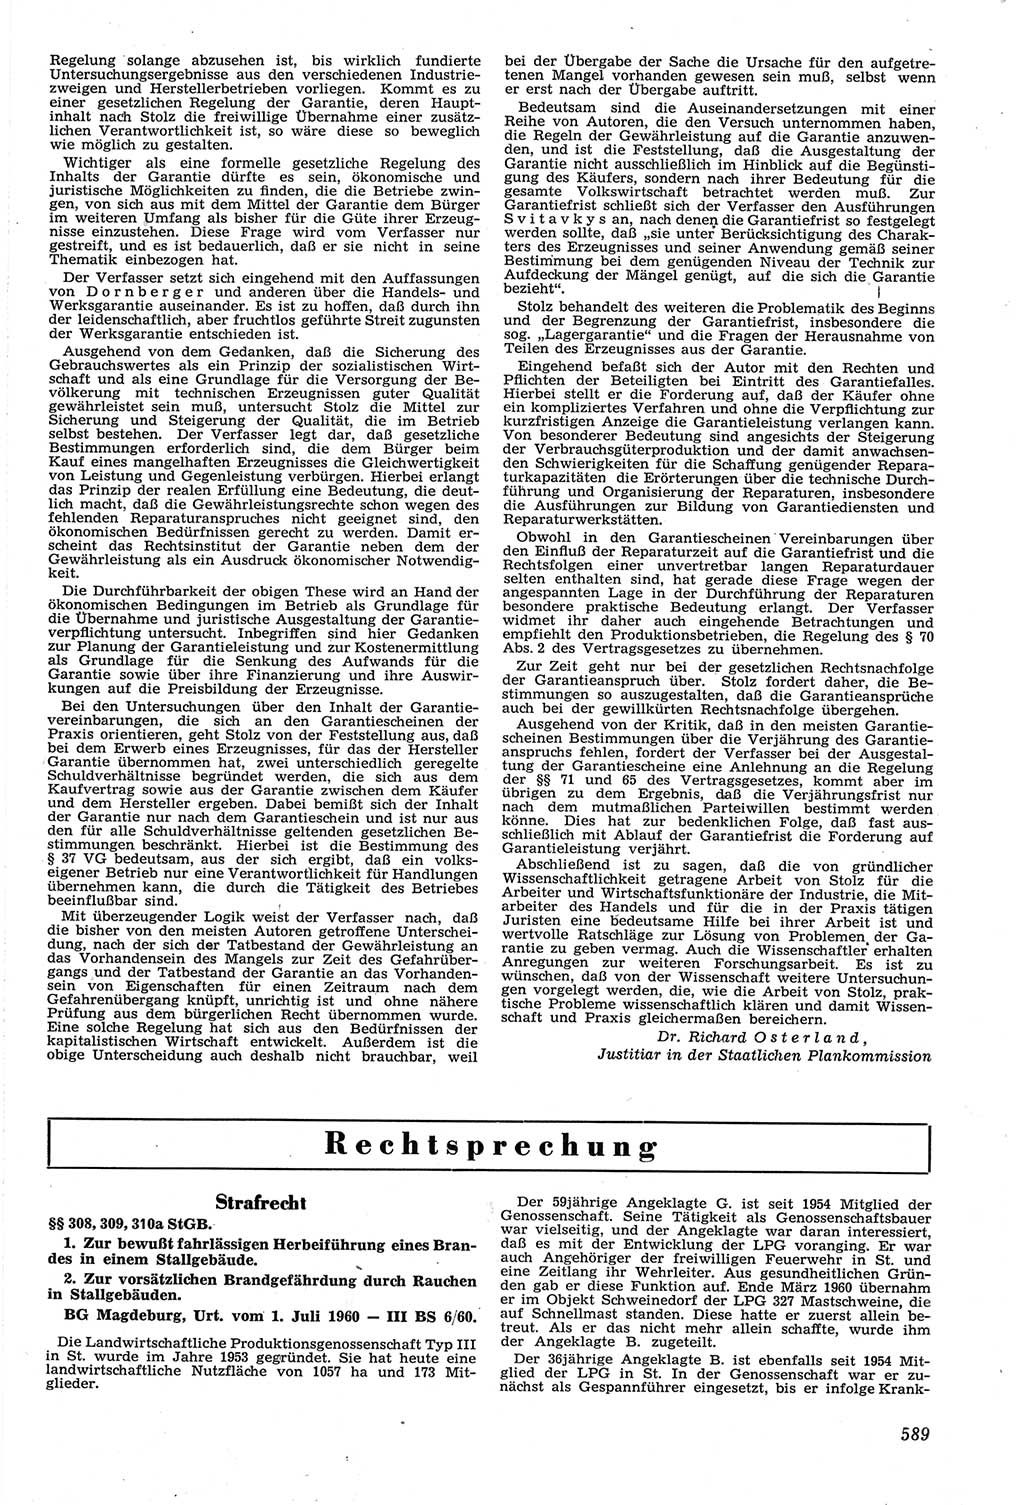 Neue Justiz (NJ), Zeitschrift für Recht und Rechtswissenschaft [Deutsche Demokratische Republik (DDR)], 14. Jahrgang 1960, Seite 589 (NJ DDR 1960, S. 589)